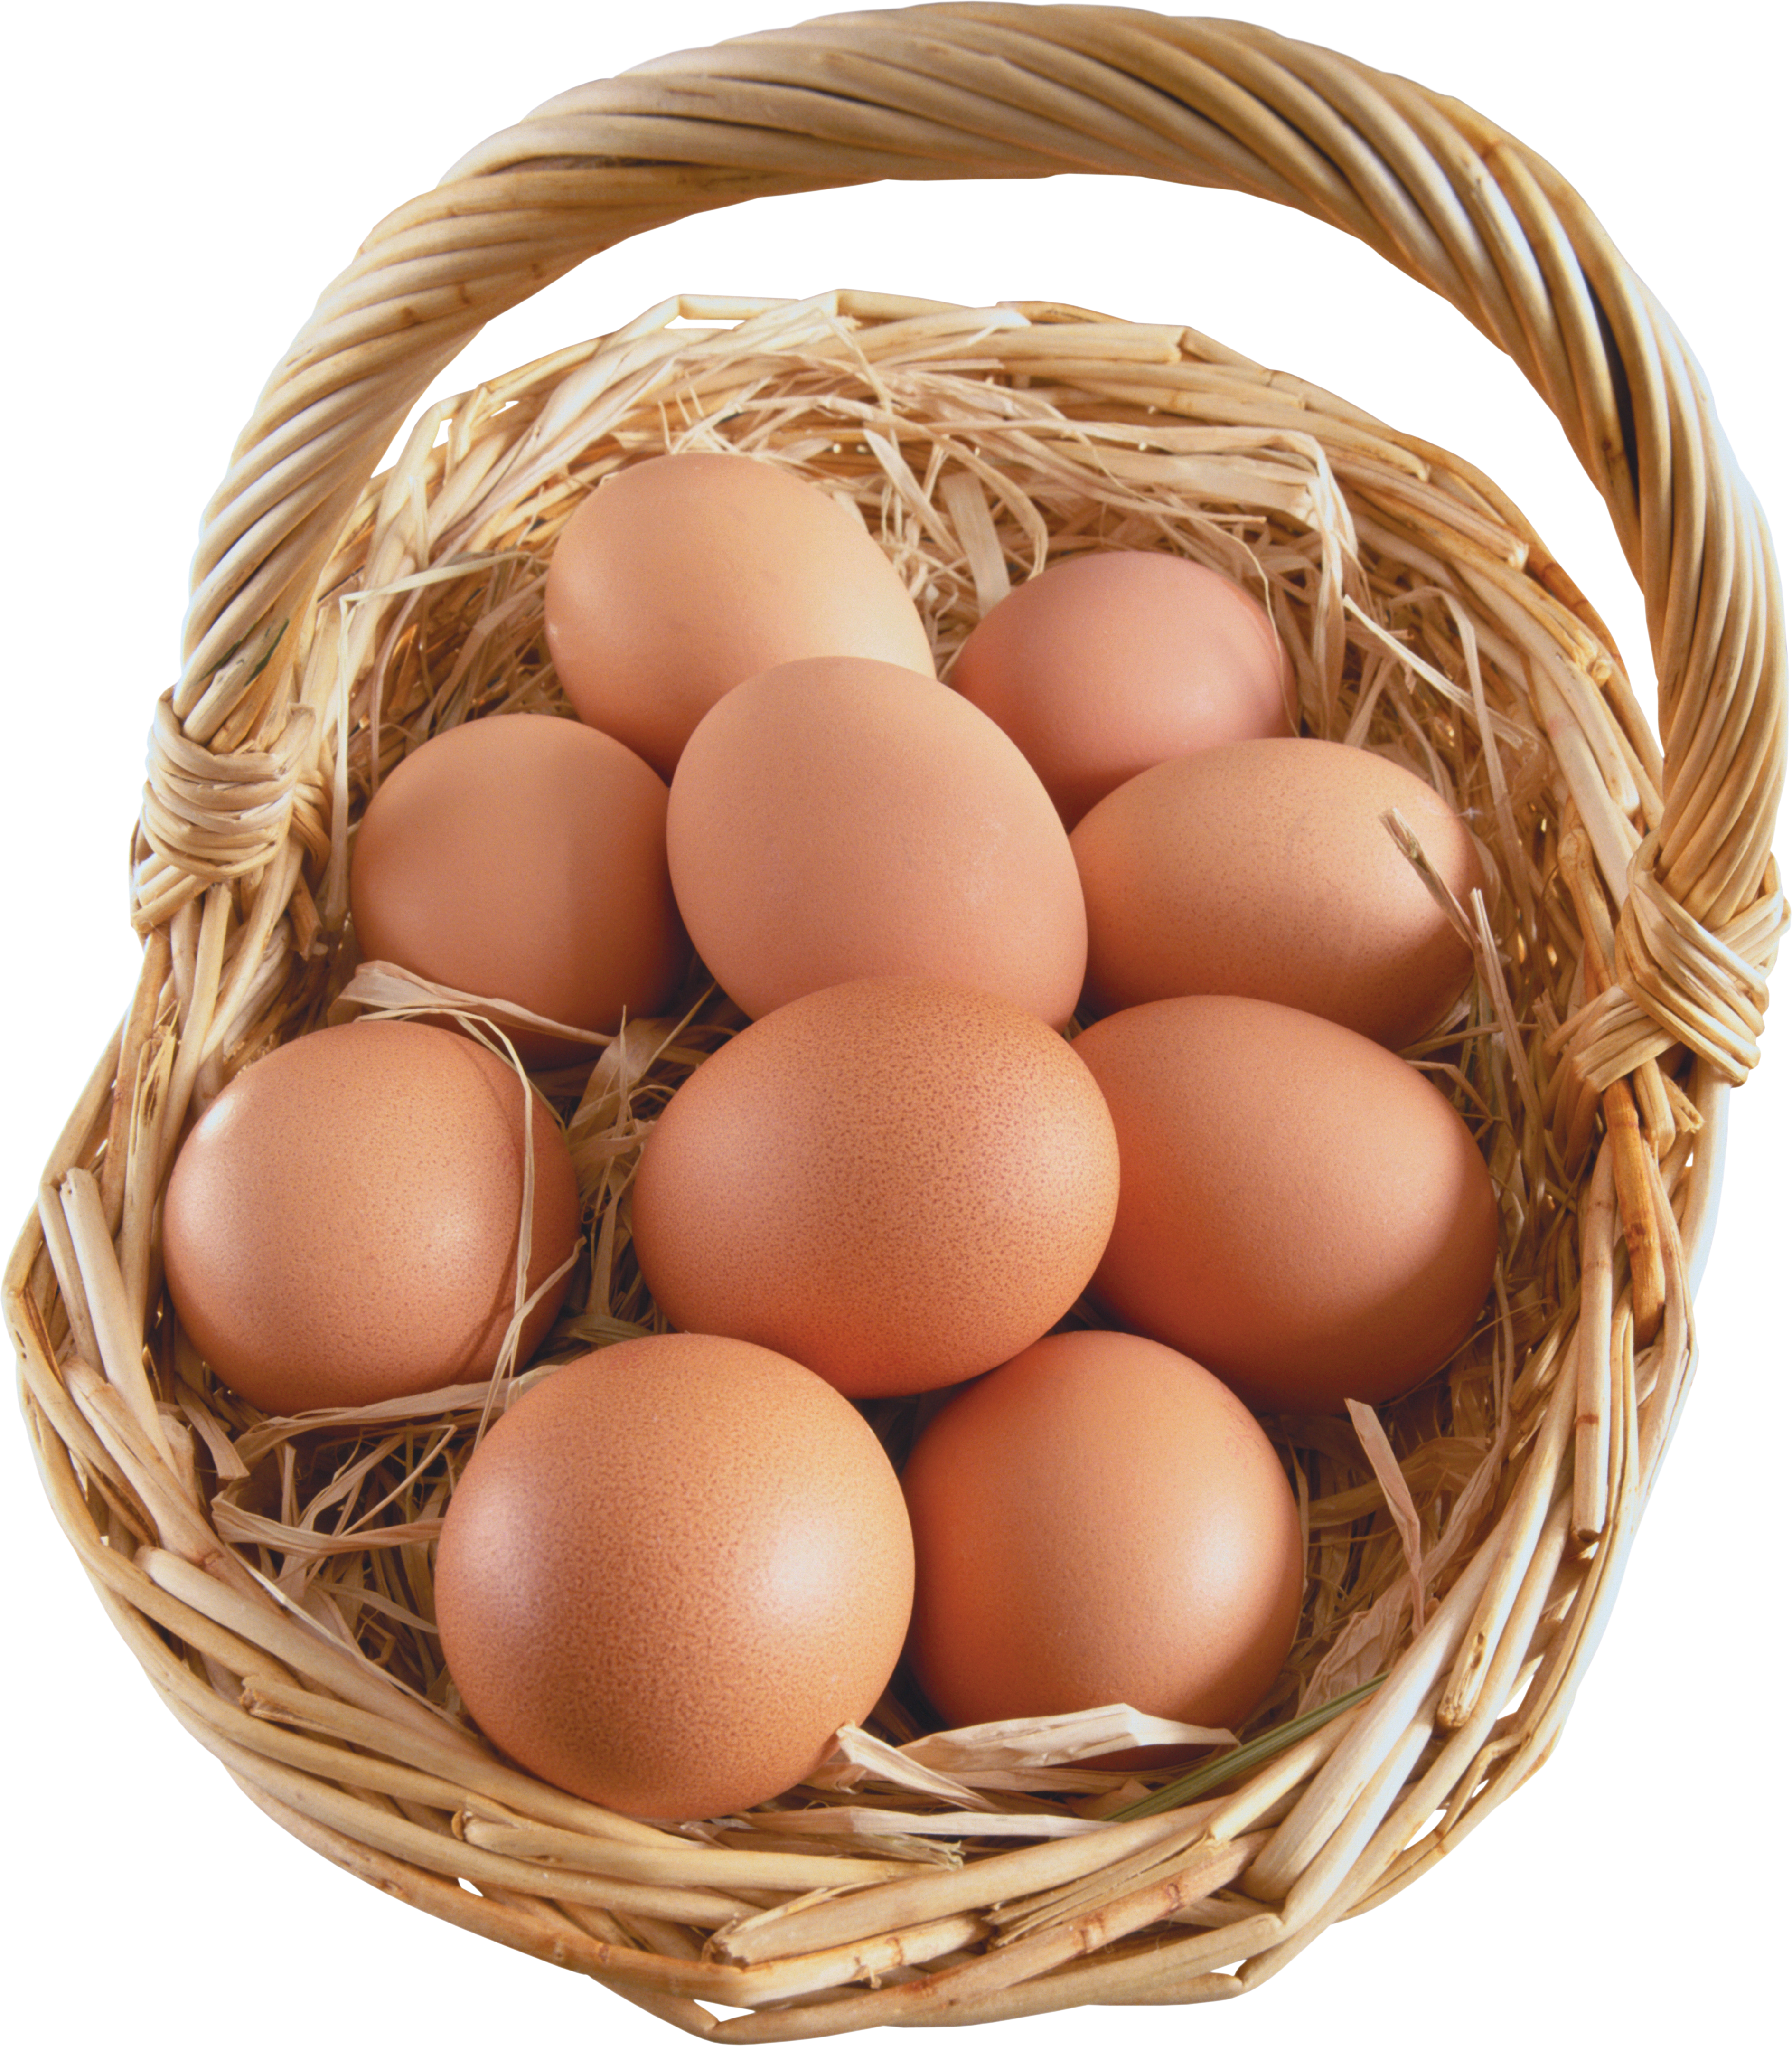 바구니에 담긴 계란